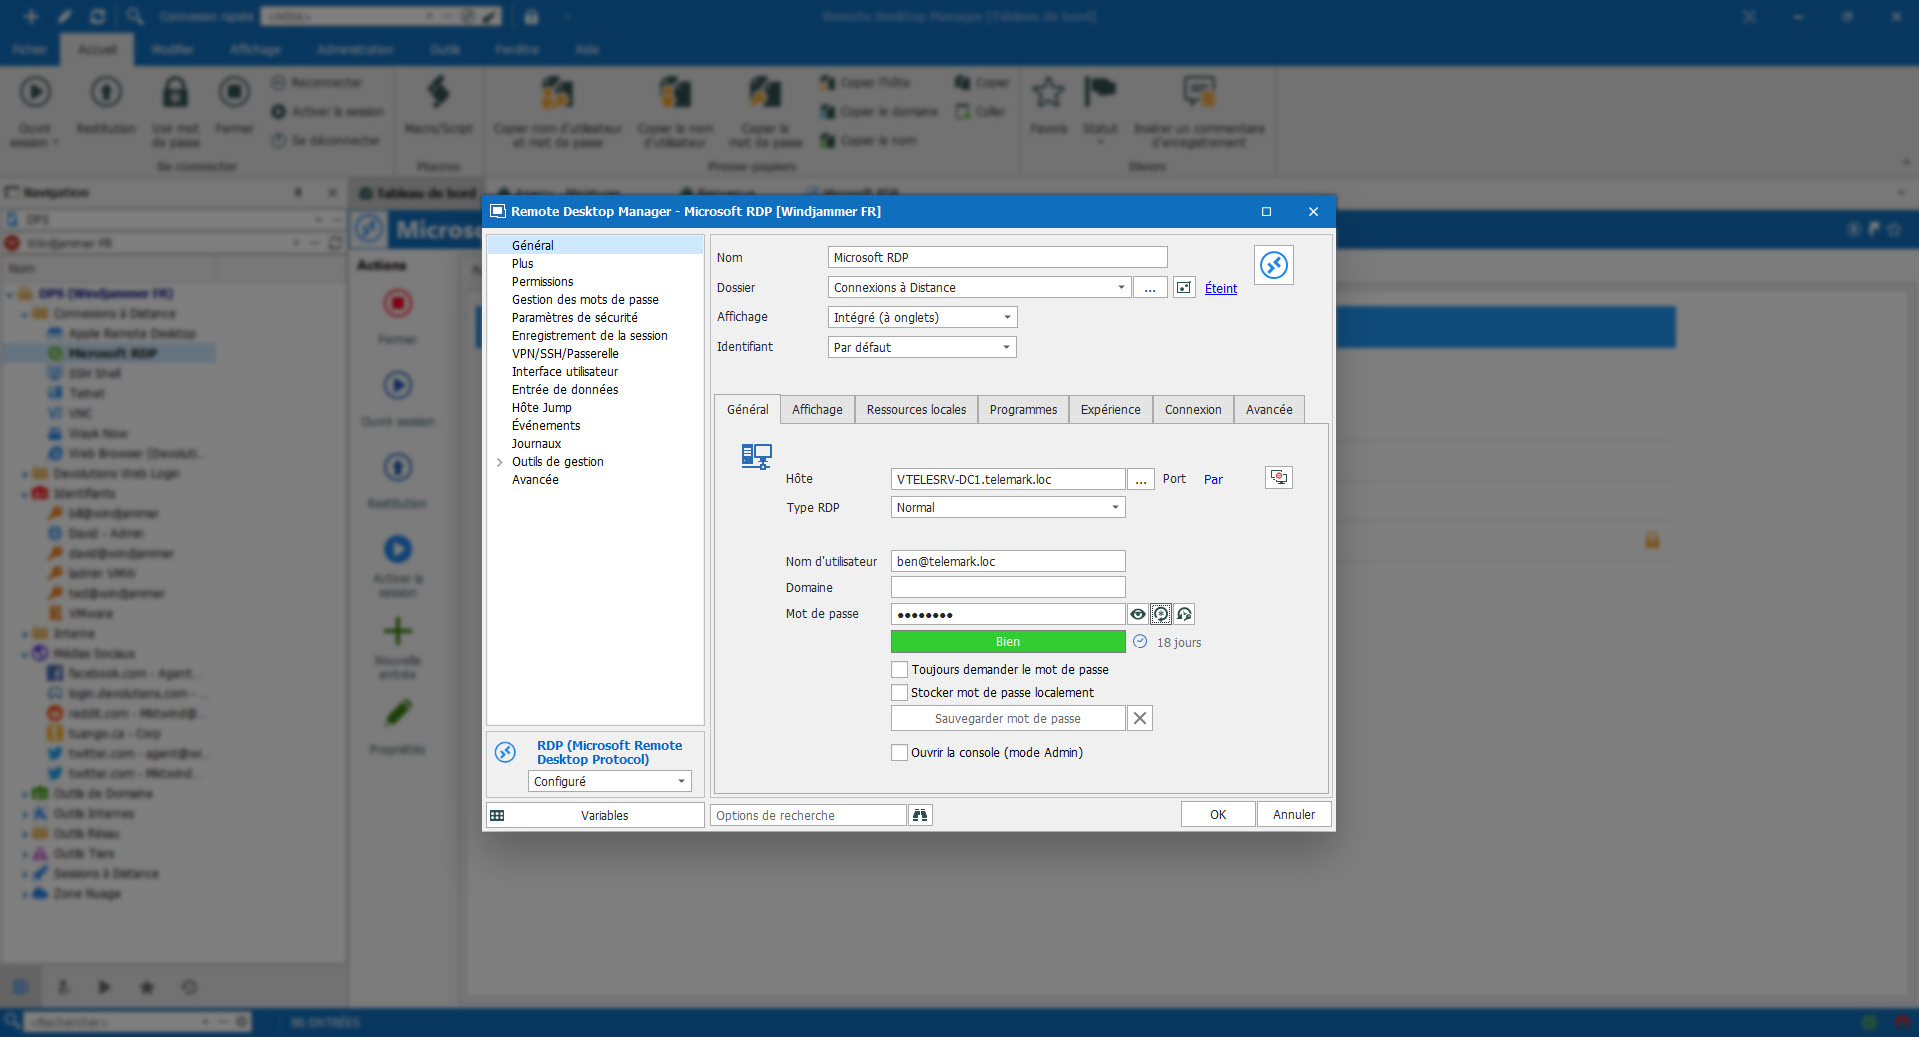 Personnalisez vos entrées selon vos besoins - Remote Desktop Manager